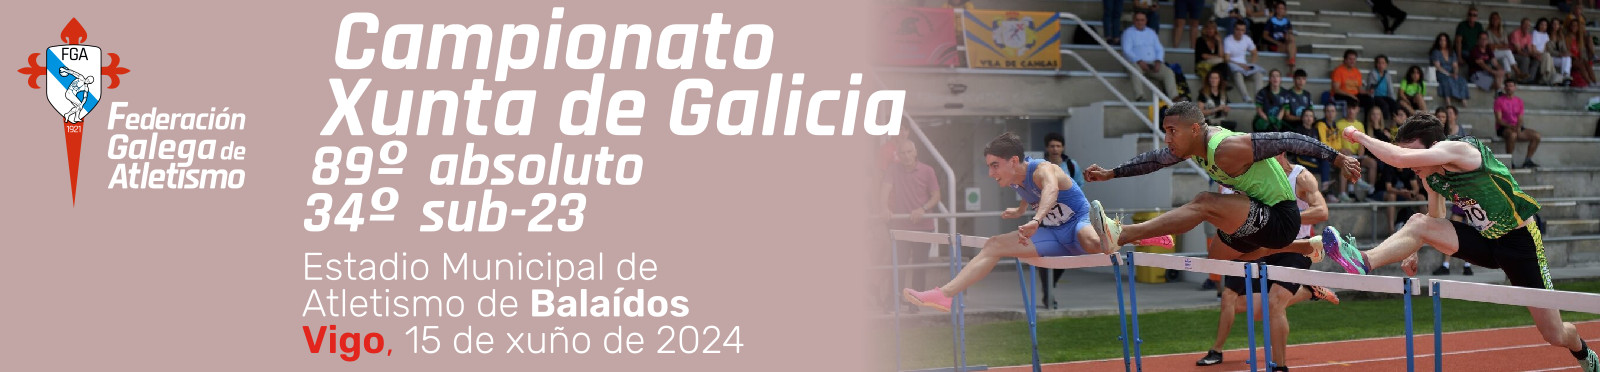 Campionato Xunta de Galicia, 89º absoluto, 34º sub-23. Vigo, 15 de xuño de 2024